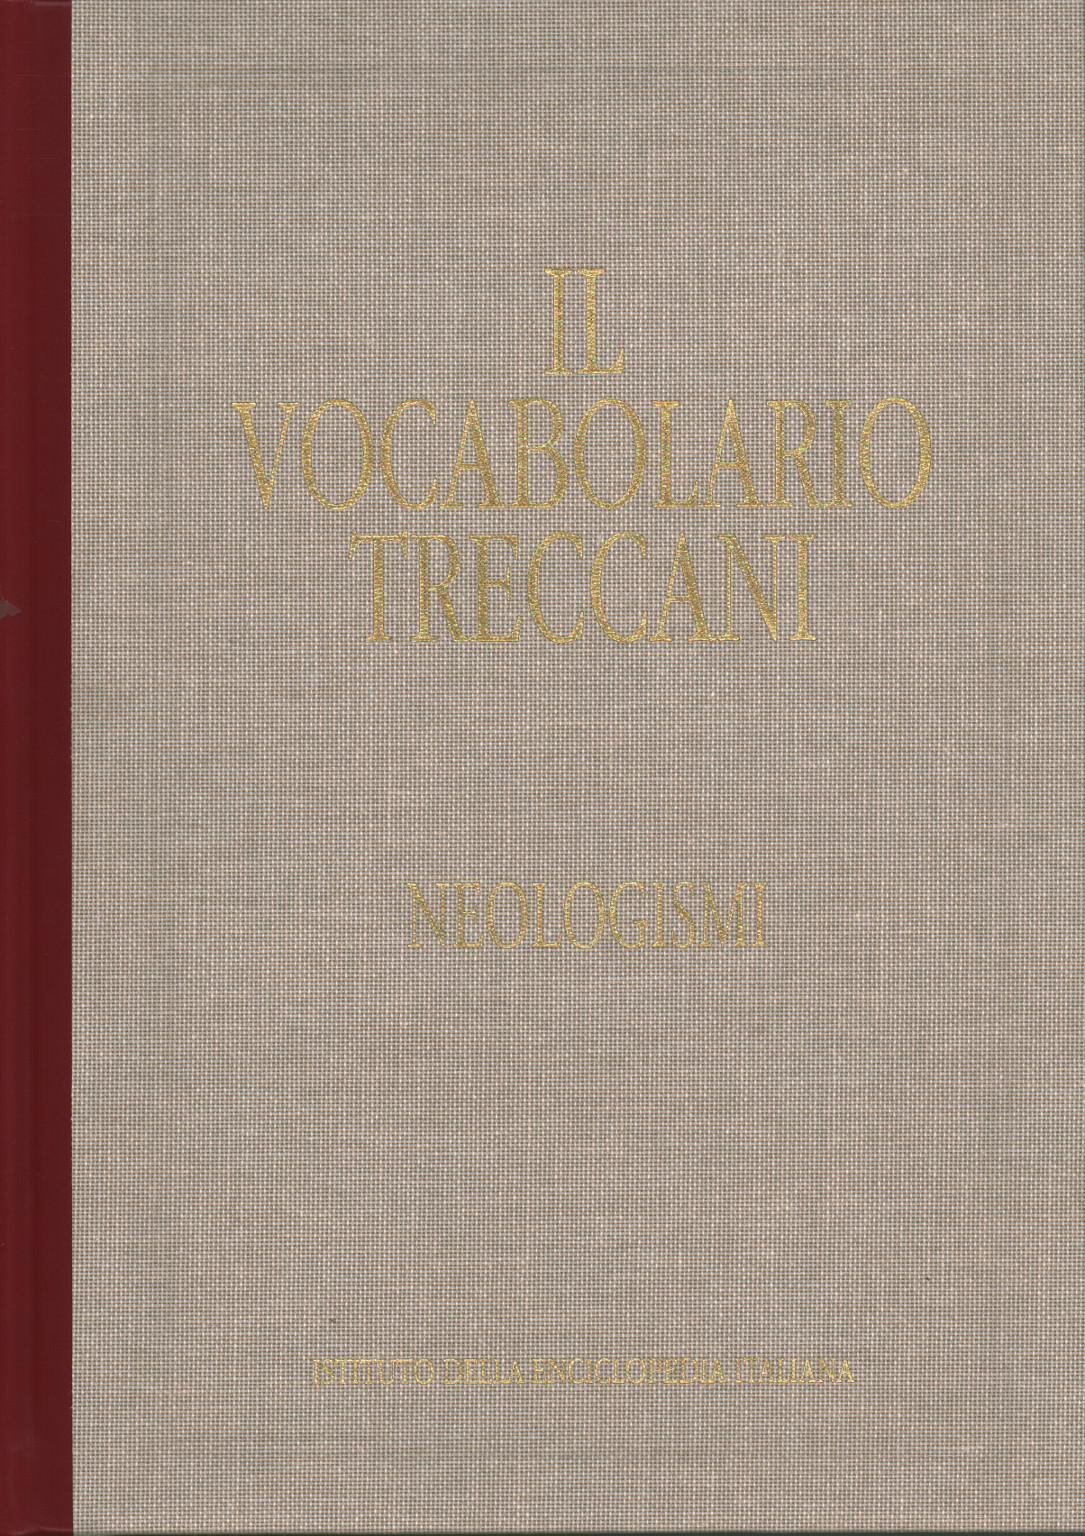 Le vocabulaire Treccani. Néologismes. Mot